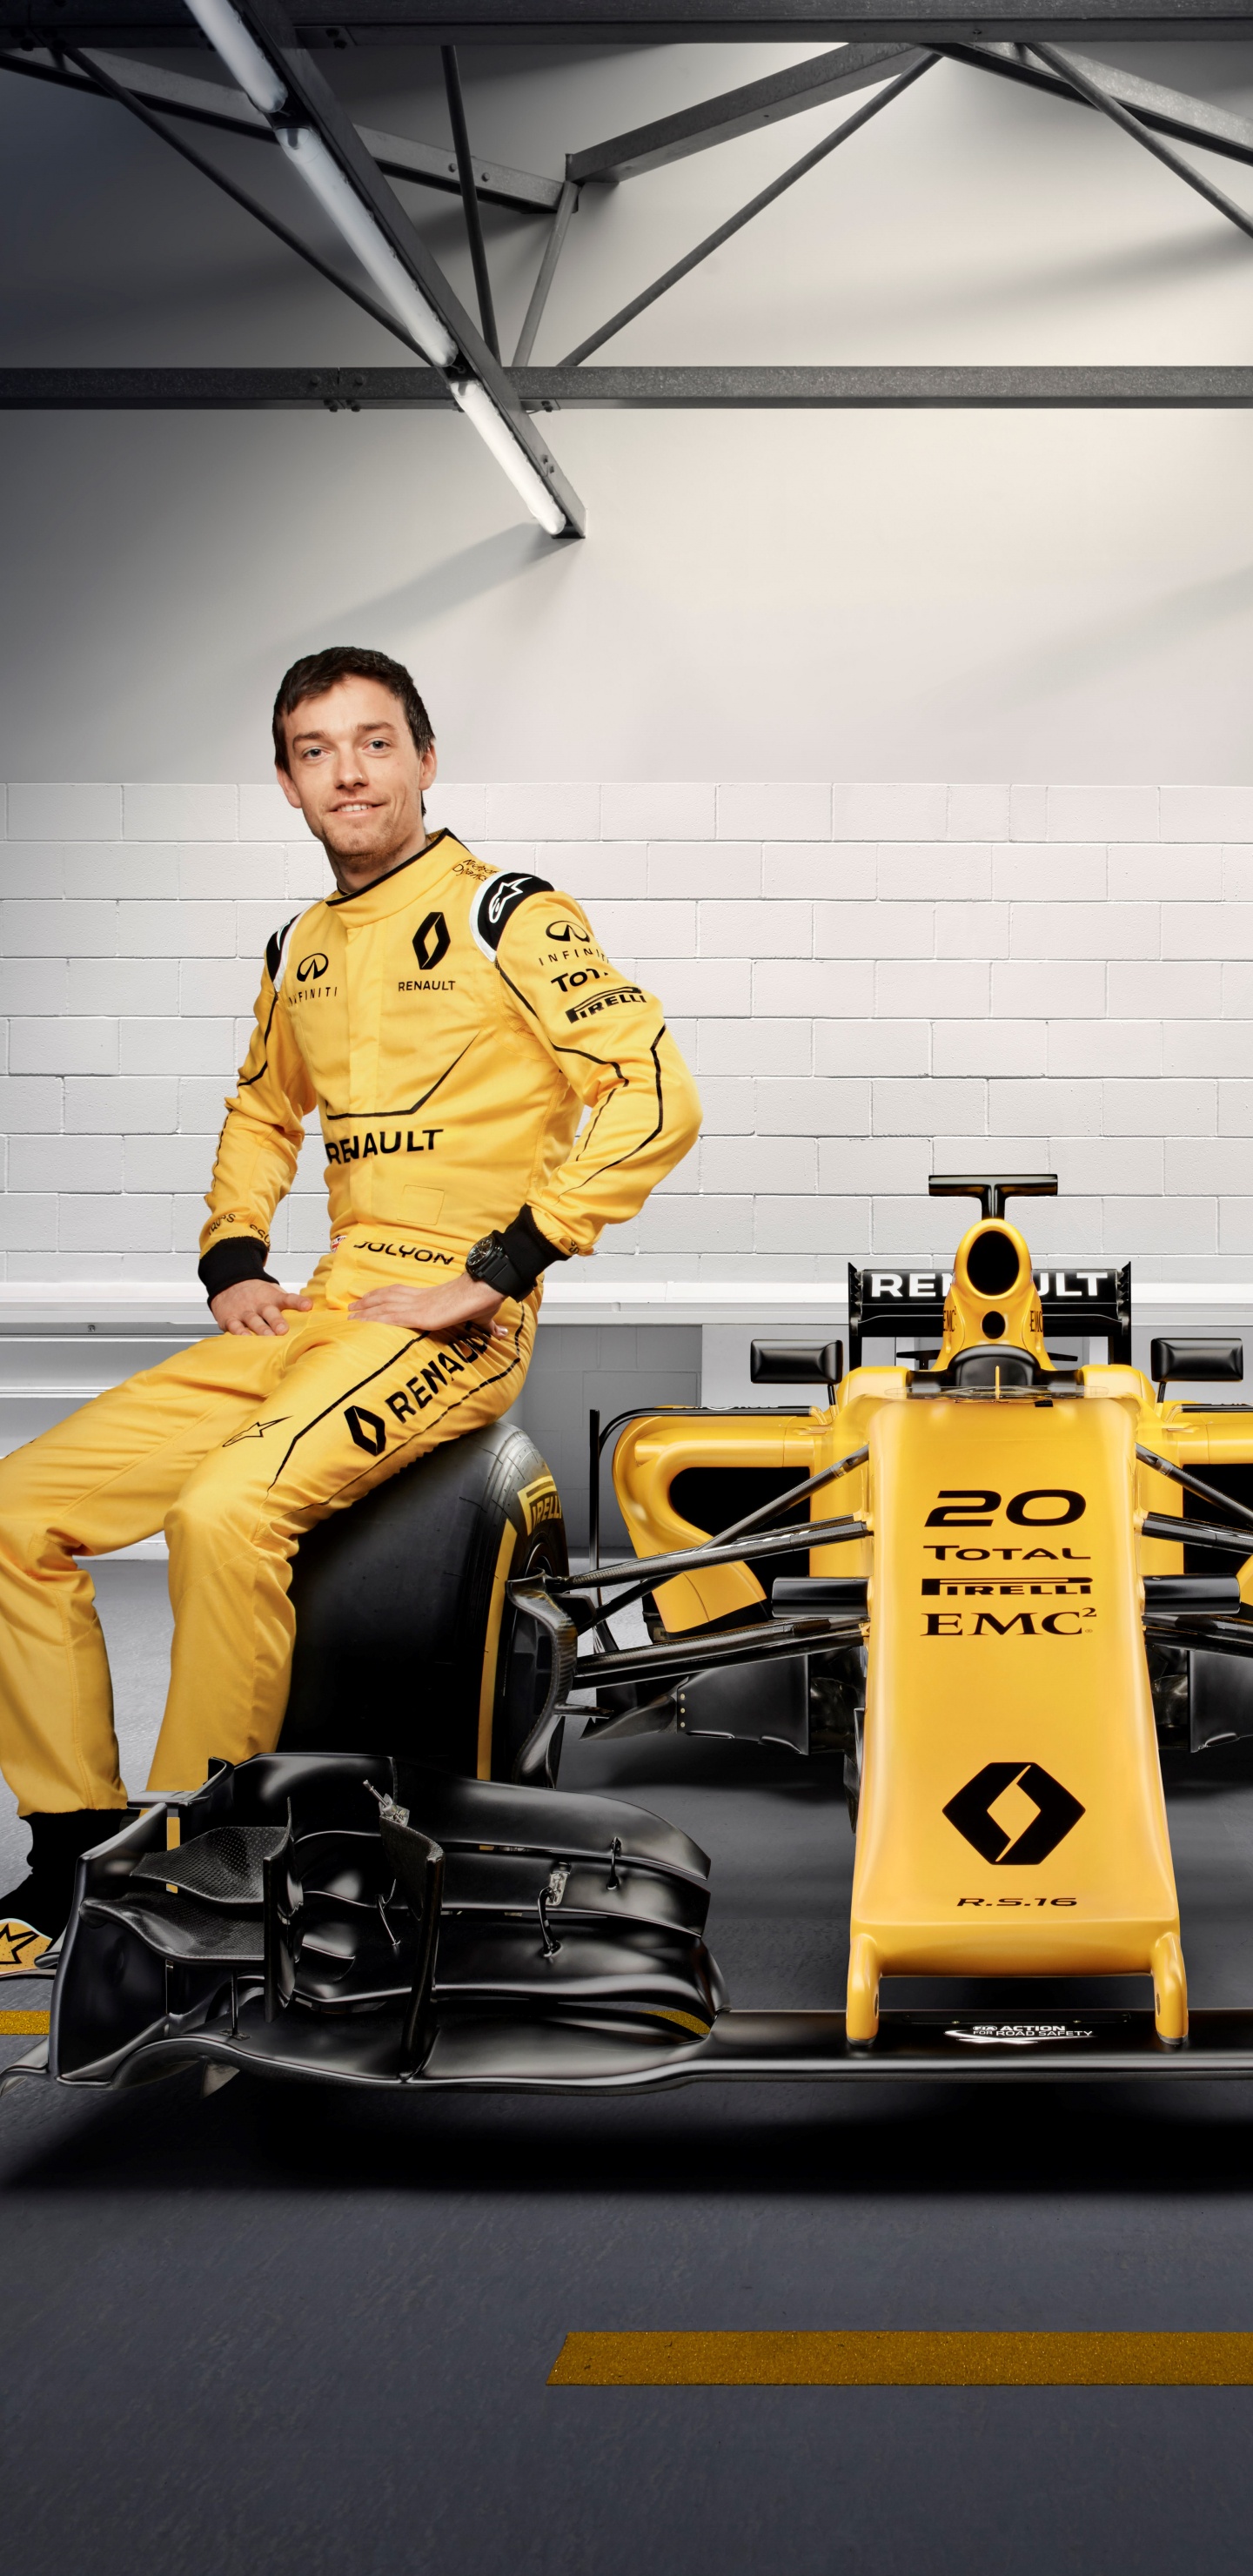 Обои 2016 Формула Один Чемпионат Мира, автогонки, Рено, желтый, команда в разрешении 1440x2960